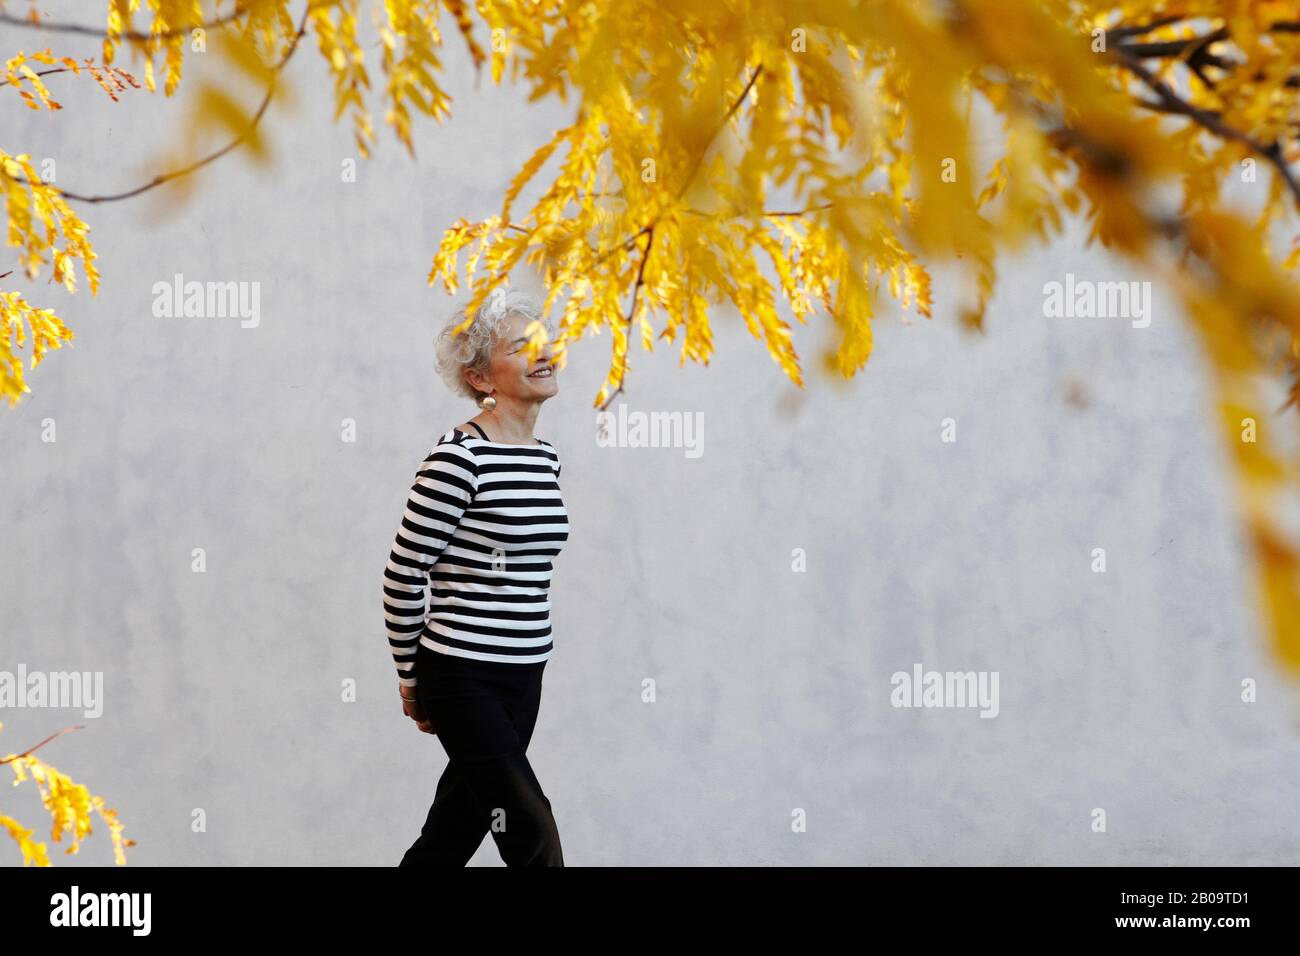 active senior woman taking a vigorous walk Stock Photo